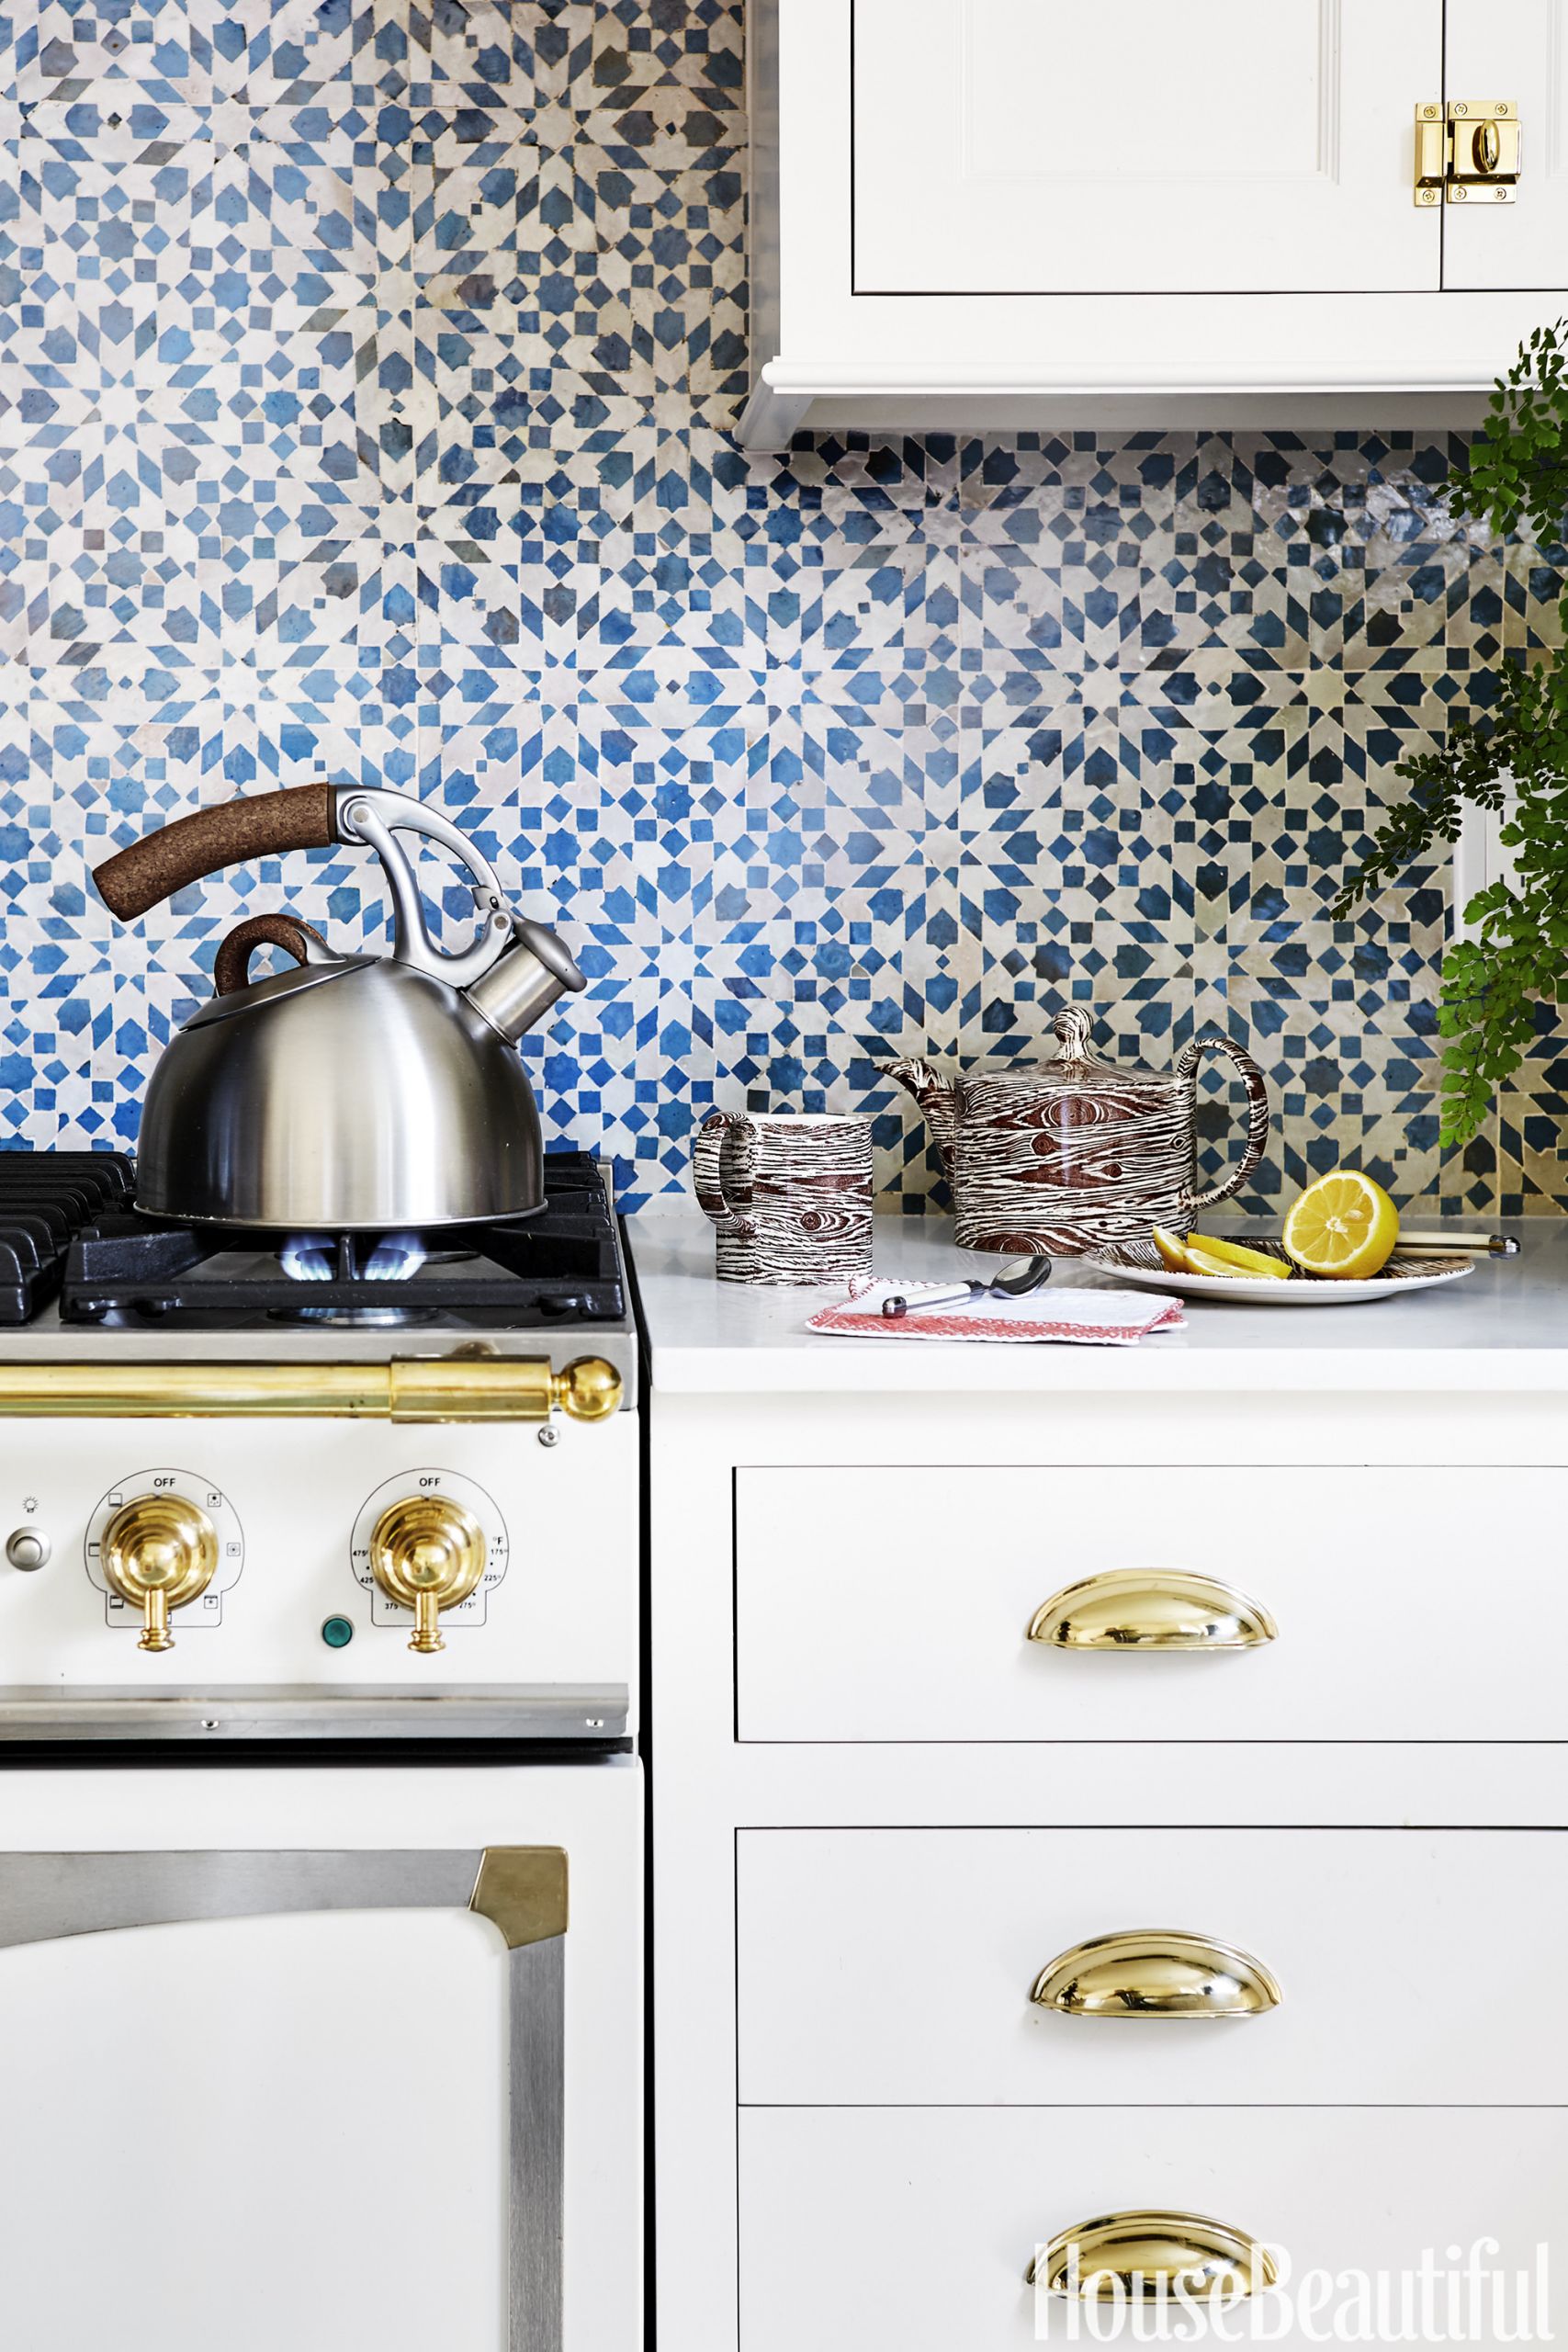 Best Tile For Kitchen Backsplash
 50 Best Kitchen Backsplash Ideas Tile Designs for